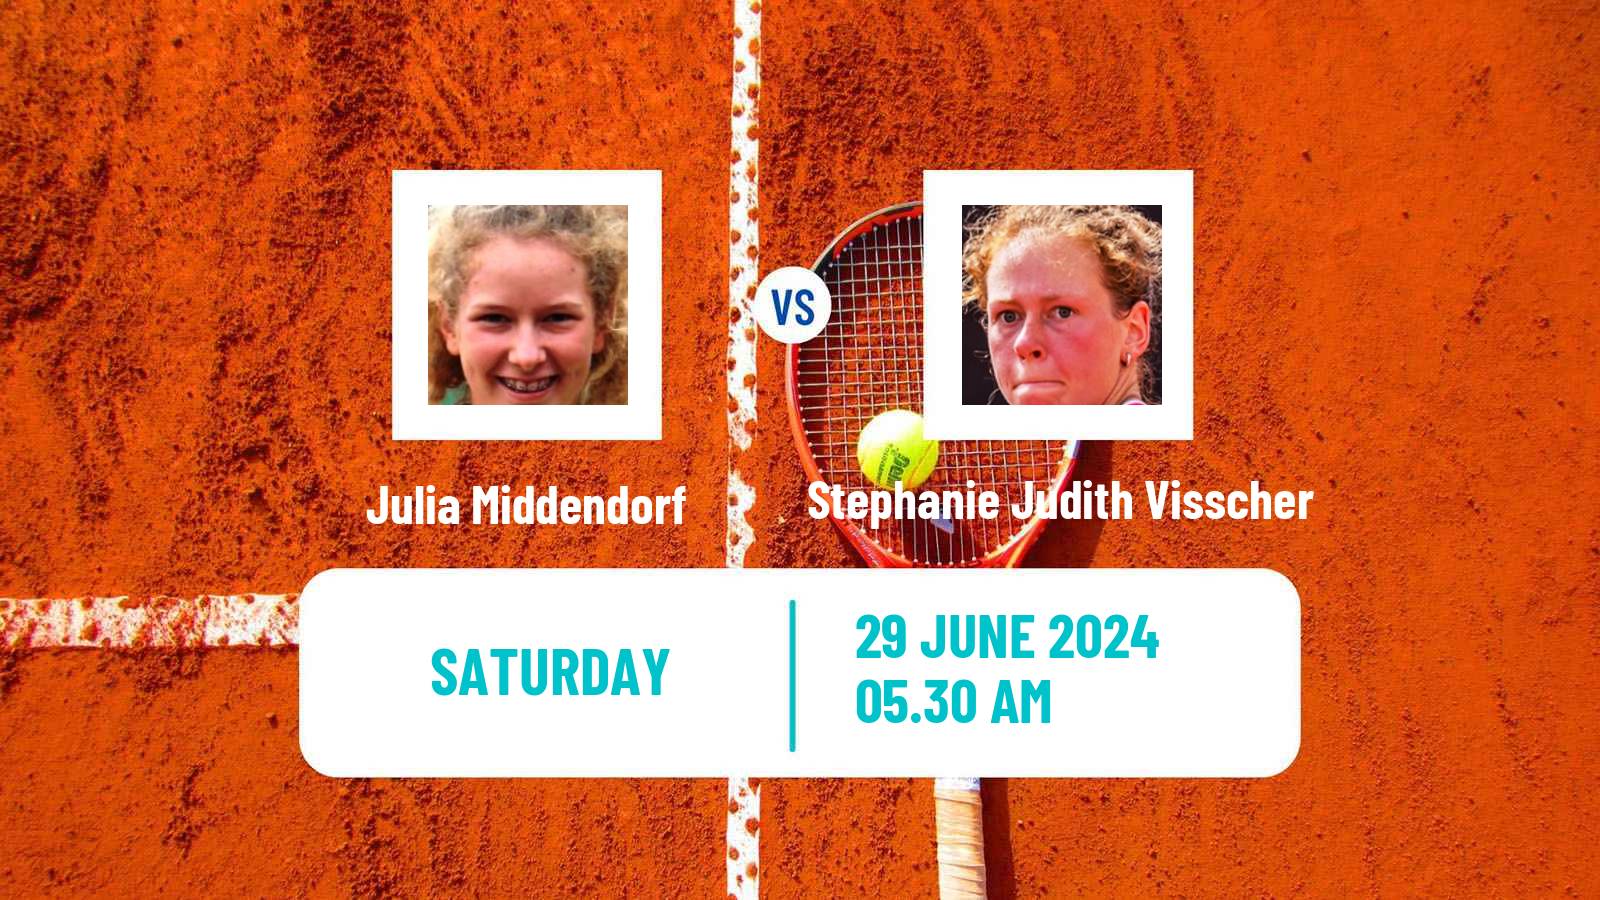 Tennis ITF W15 Kamen Women Julia Middendorf - Stephanie Judith Visscher